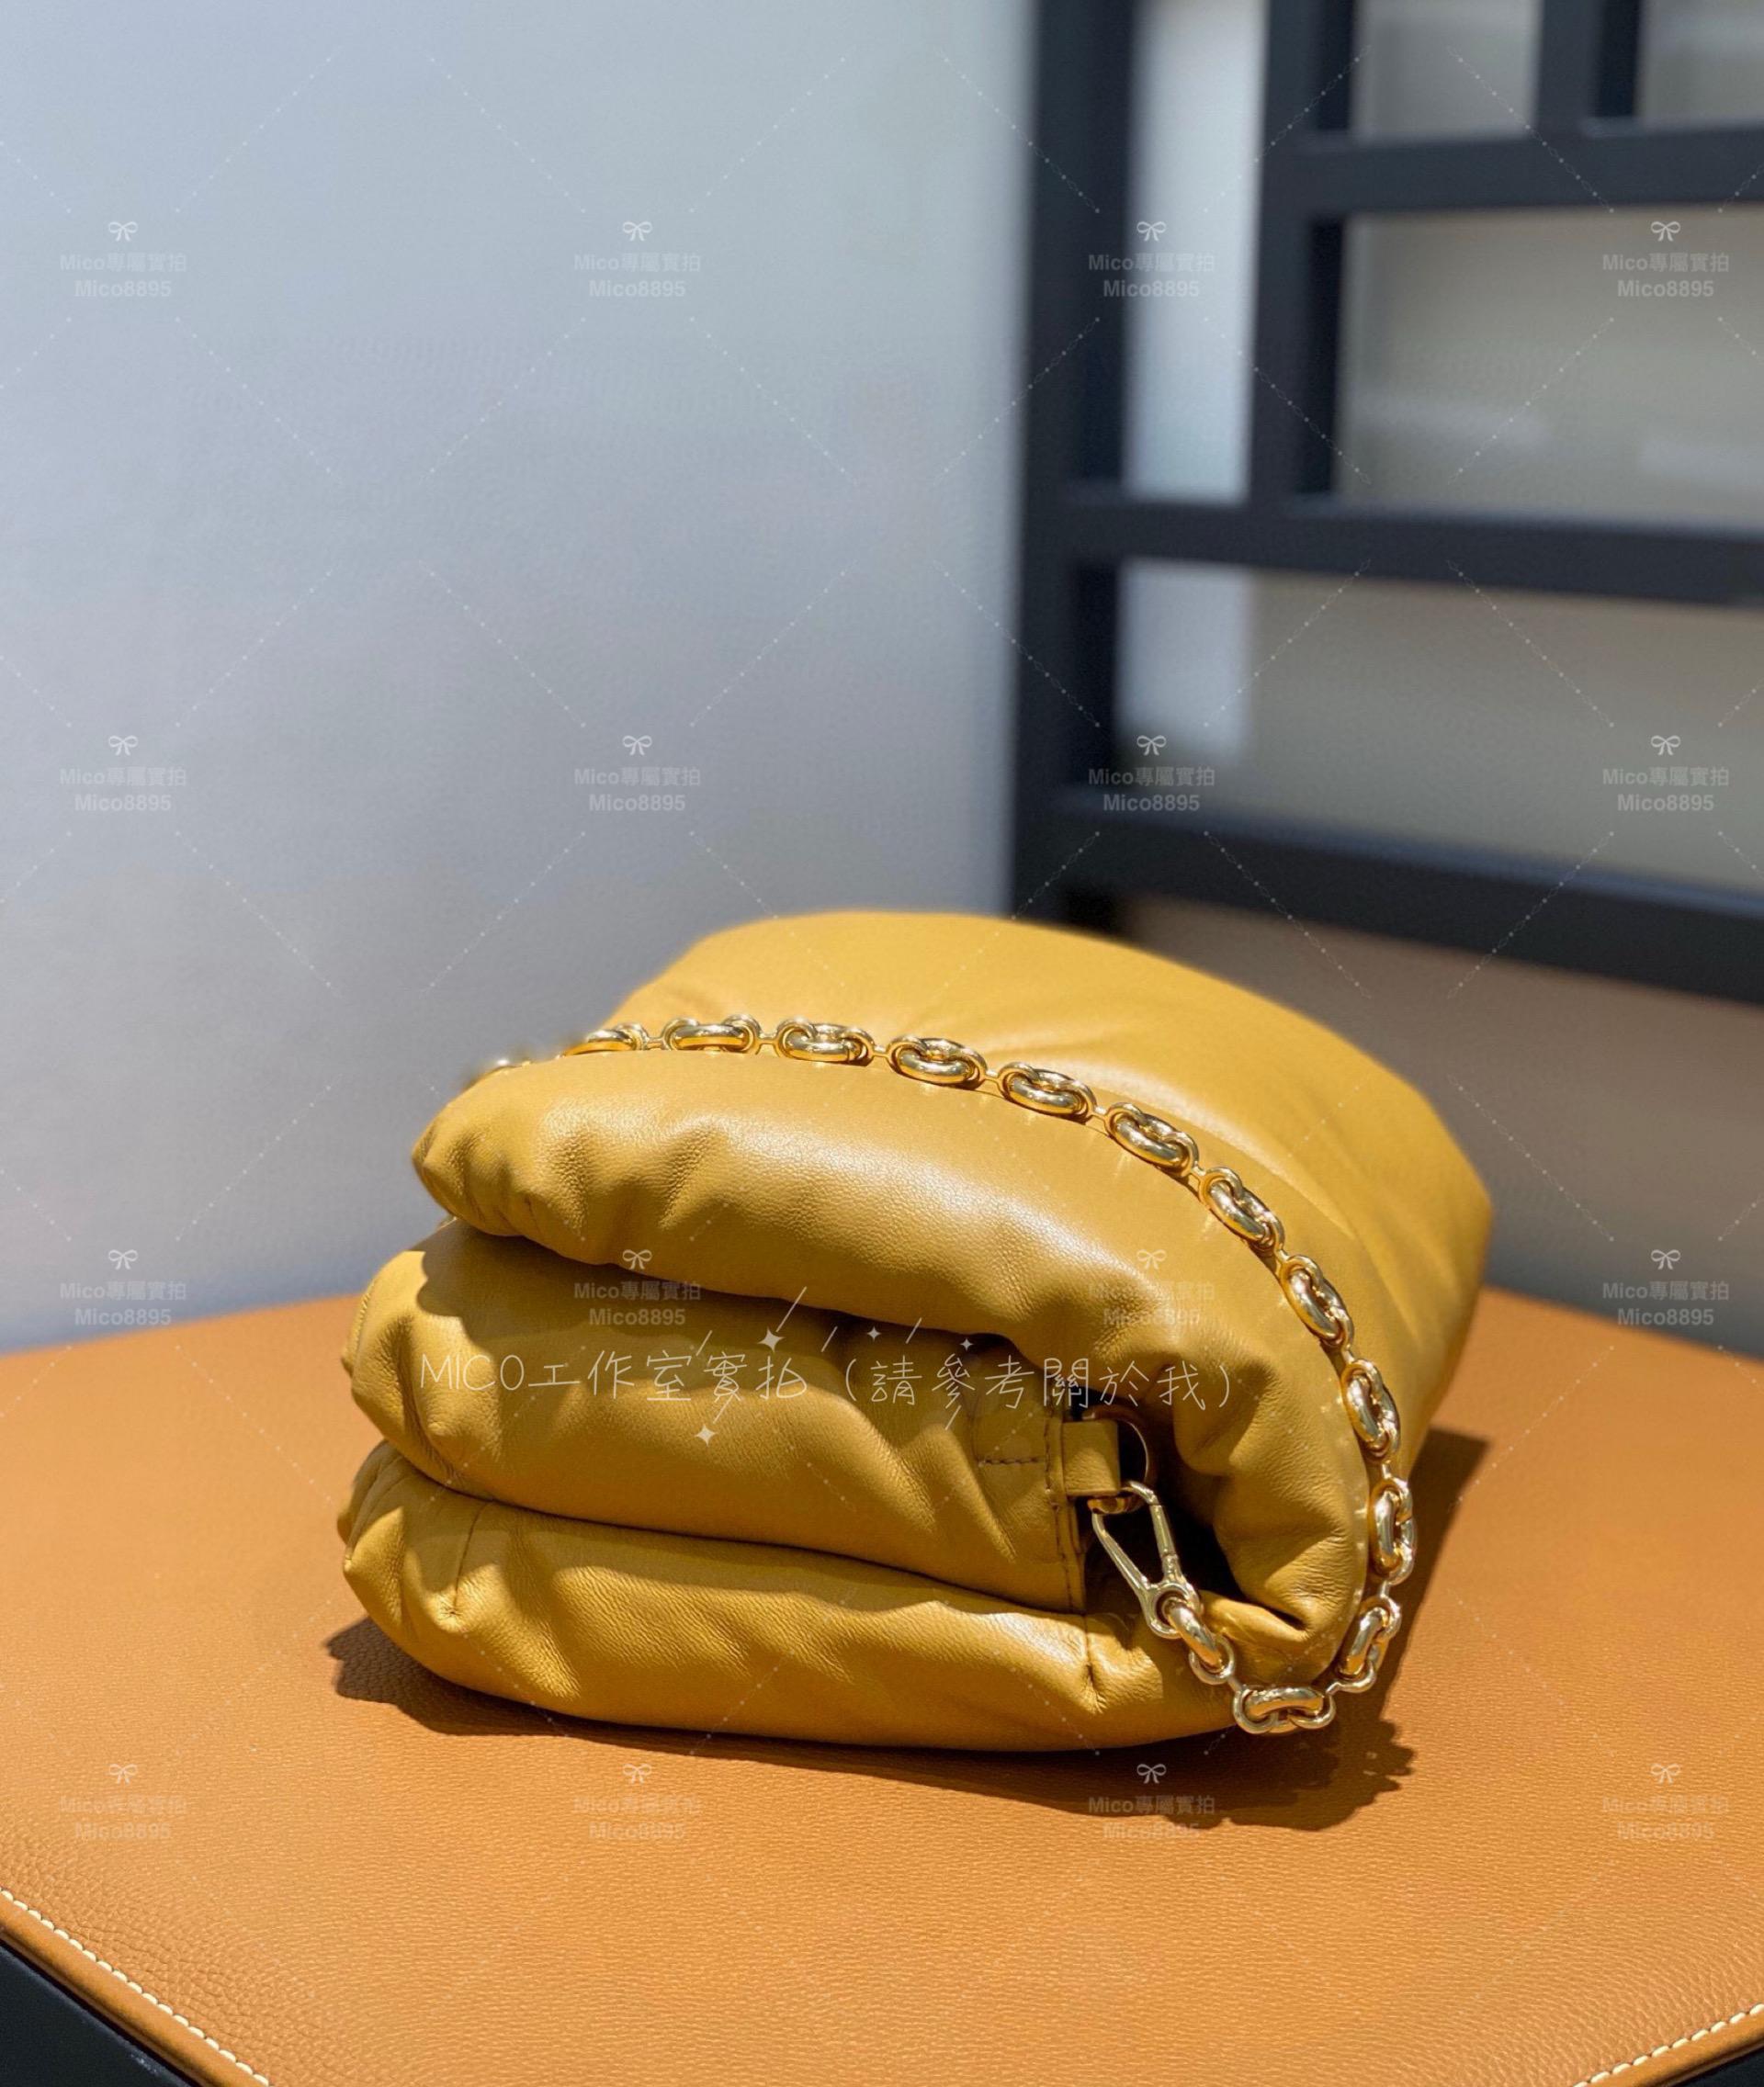 Loewe 納帕羊皮革 芒果黃 Puffer Goya手袋 枕頭包/豆腐包 23cm